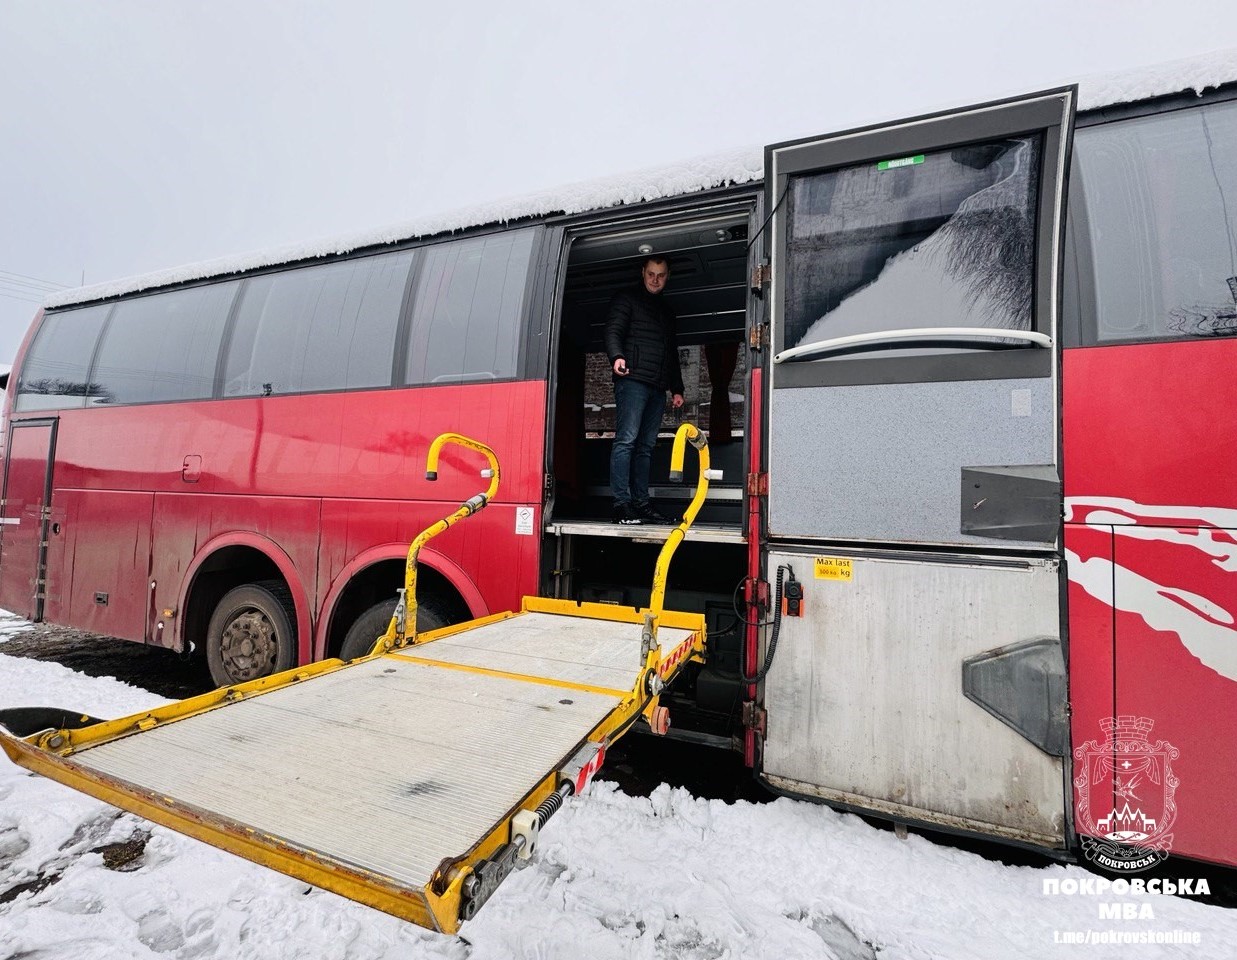 Підіймач для візочка в автобусі зі Швеції . Фото: Покровська МВА